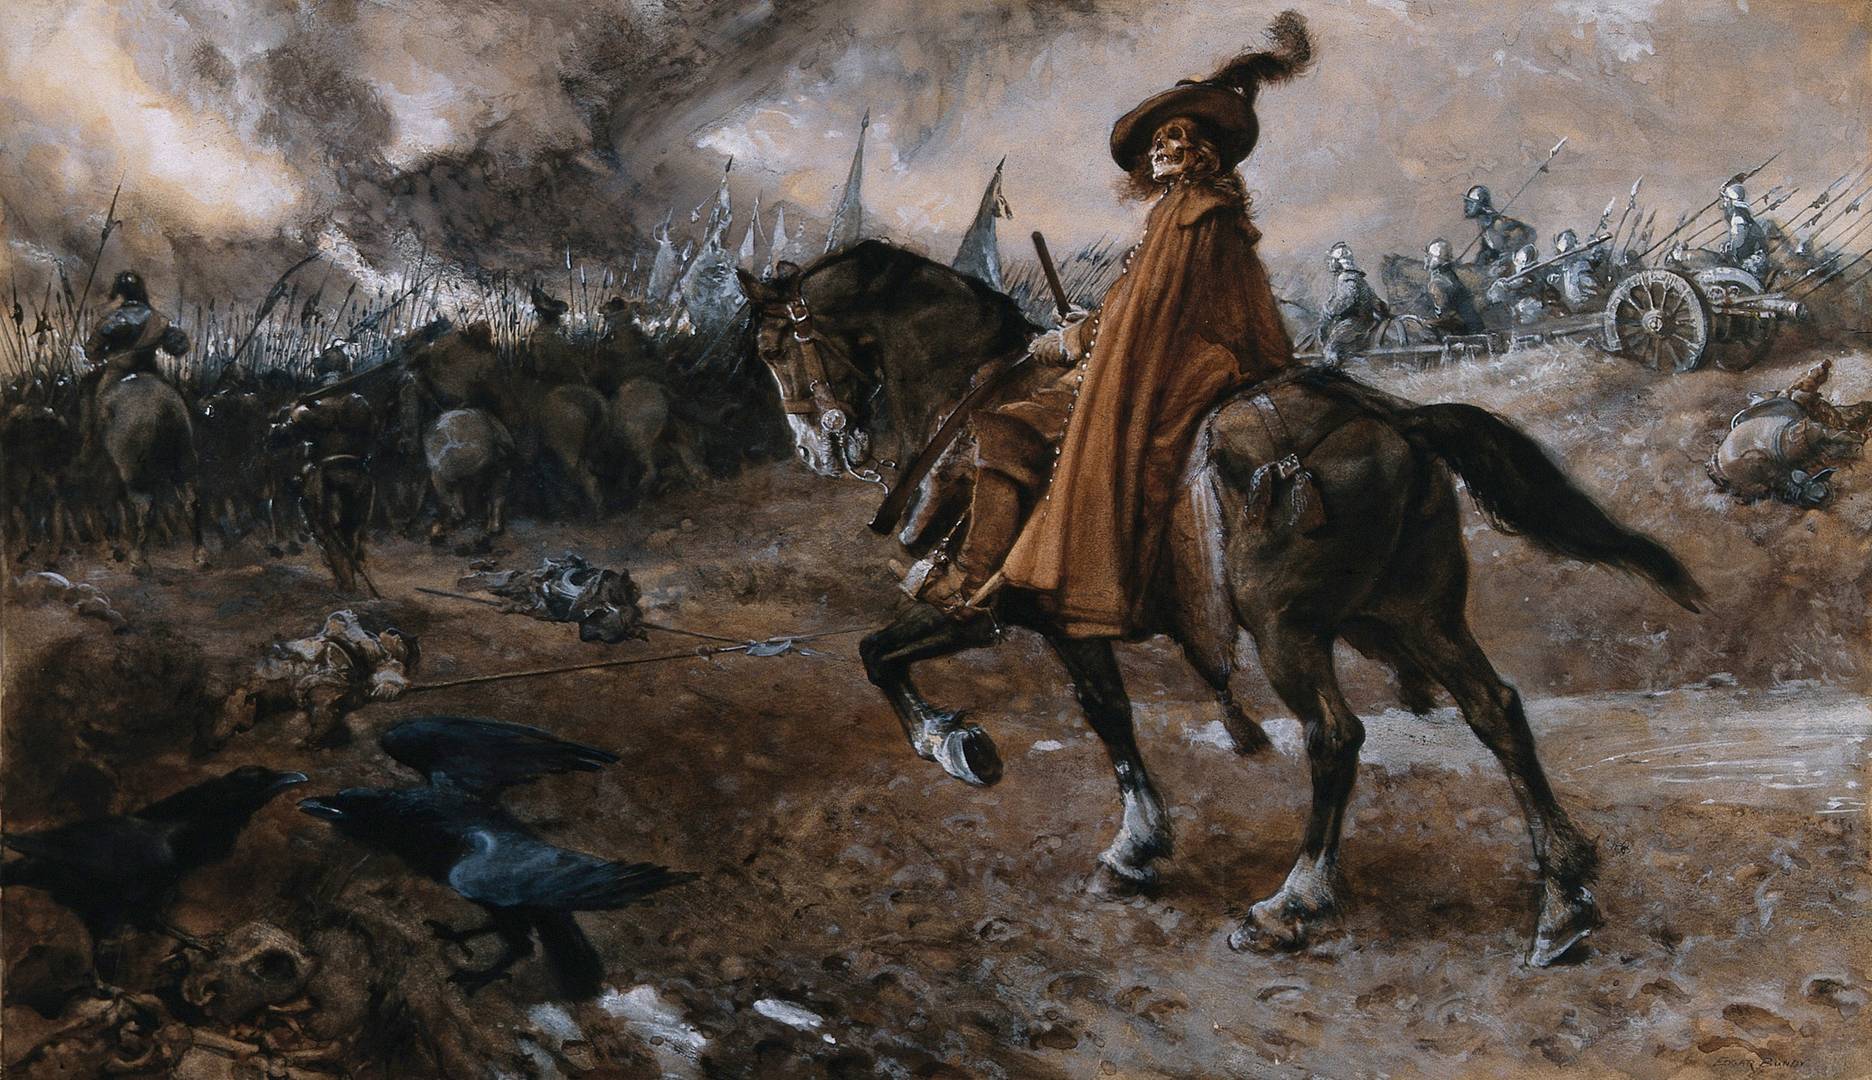 Эдгар Банди. Смерть в облике генерала на поле боя. 1911